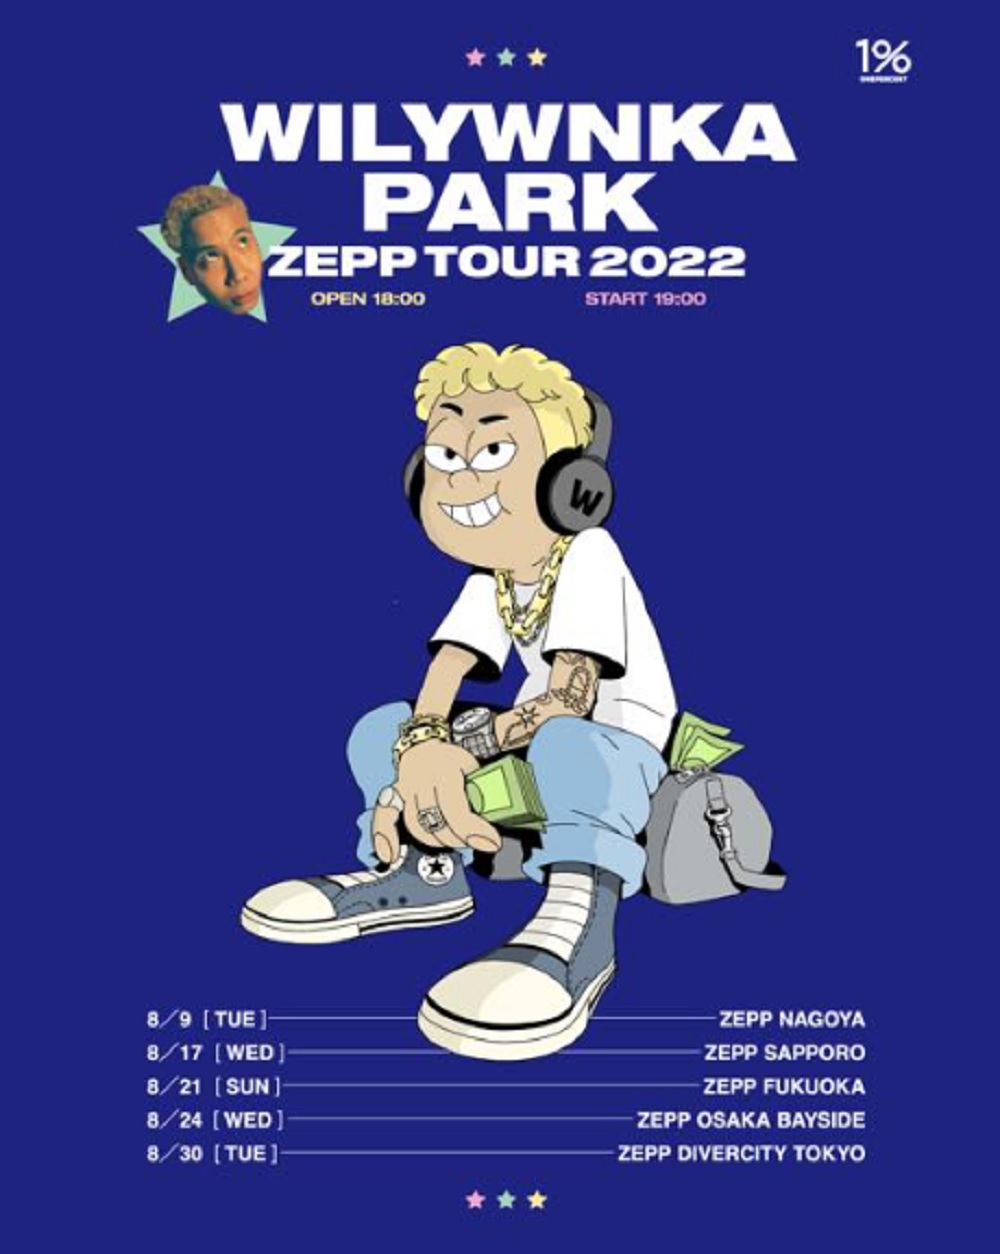 WILYWNKA│WILYWNKA PARK Zepp Tour 2022